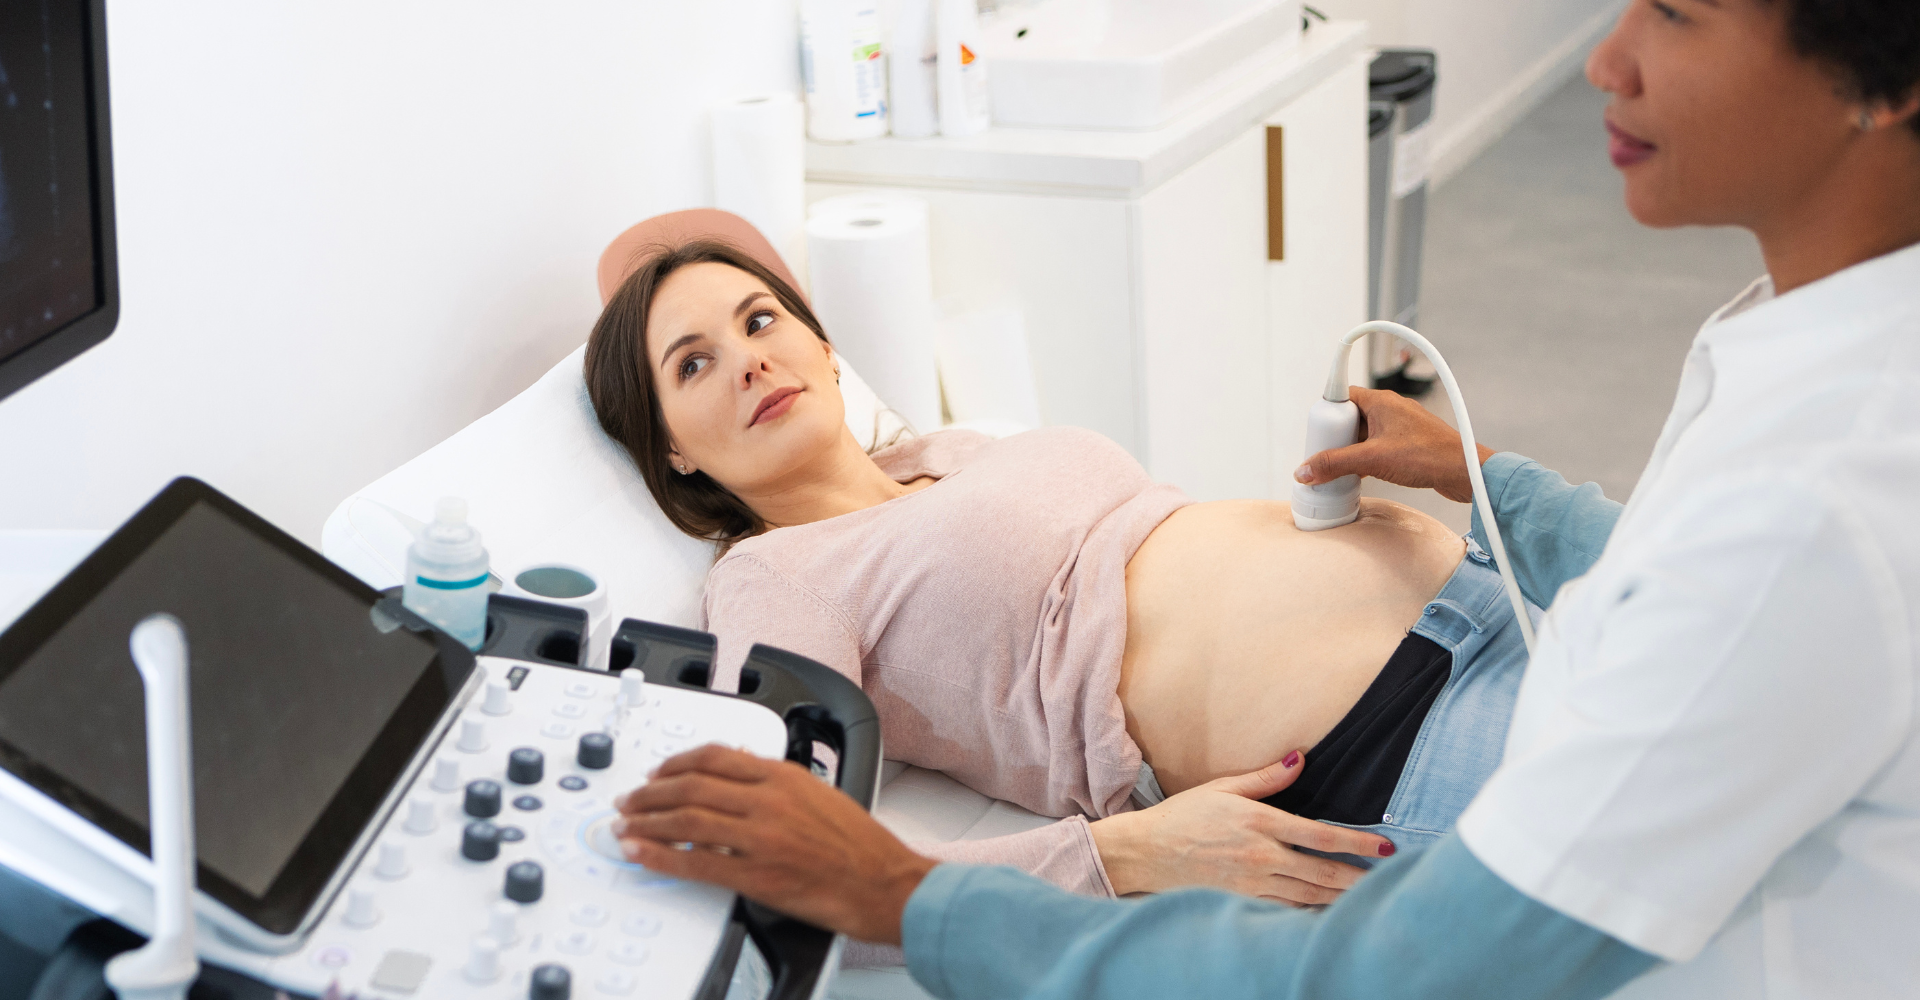 Pregnancy genetic screening